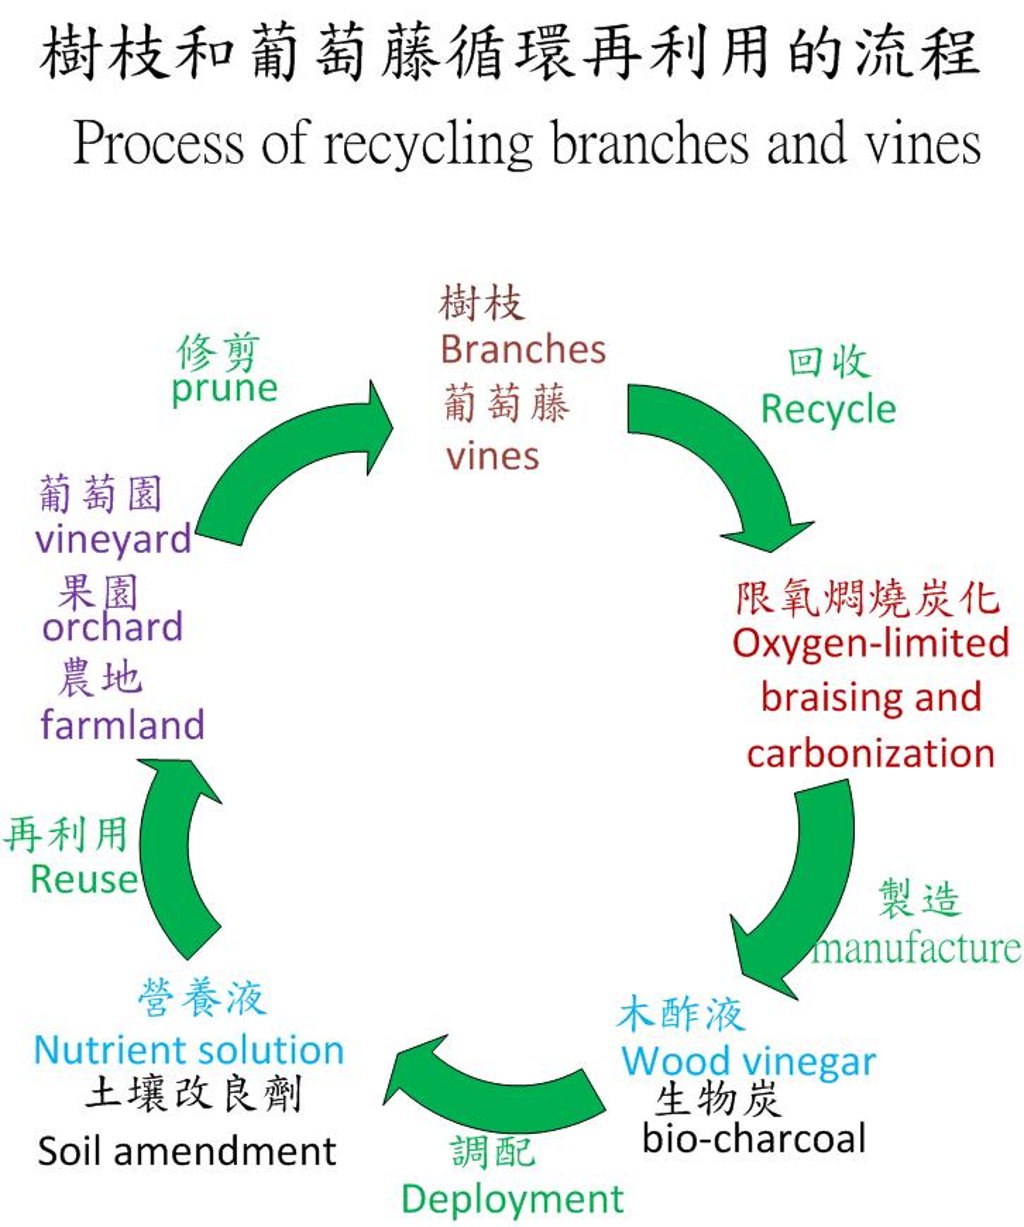 推動台灣的樹枝和葡萄藤炭化循環再利用